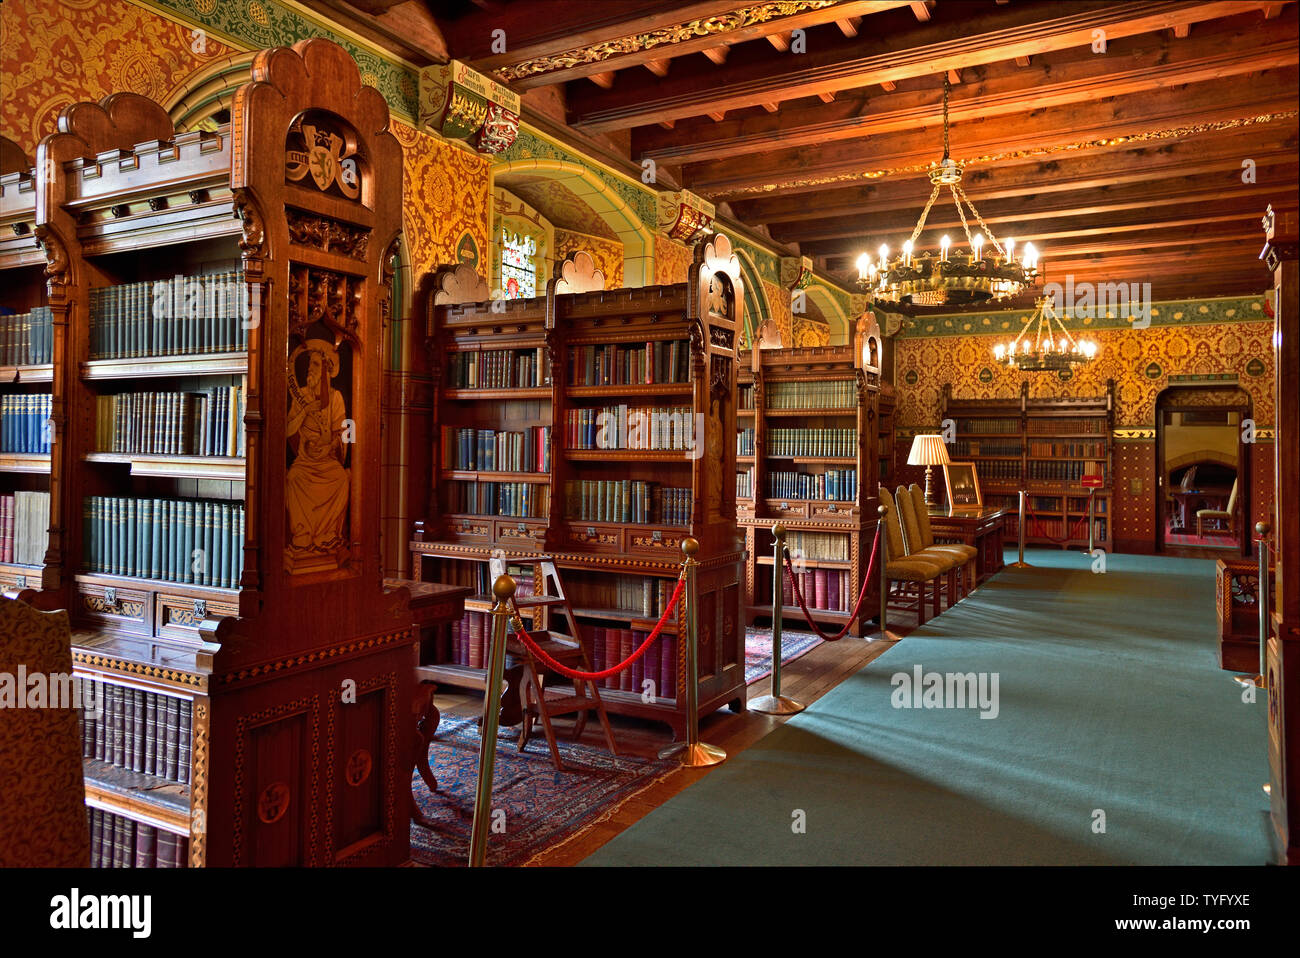 Vue panoramique de la bibliothèque du château de Cardiff, le plafond incurvé en bois, lustres, bibliothèques, livres, riche sonorité chaude, la photographie en juin 2019 Banque D'Images